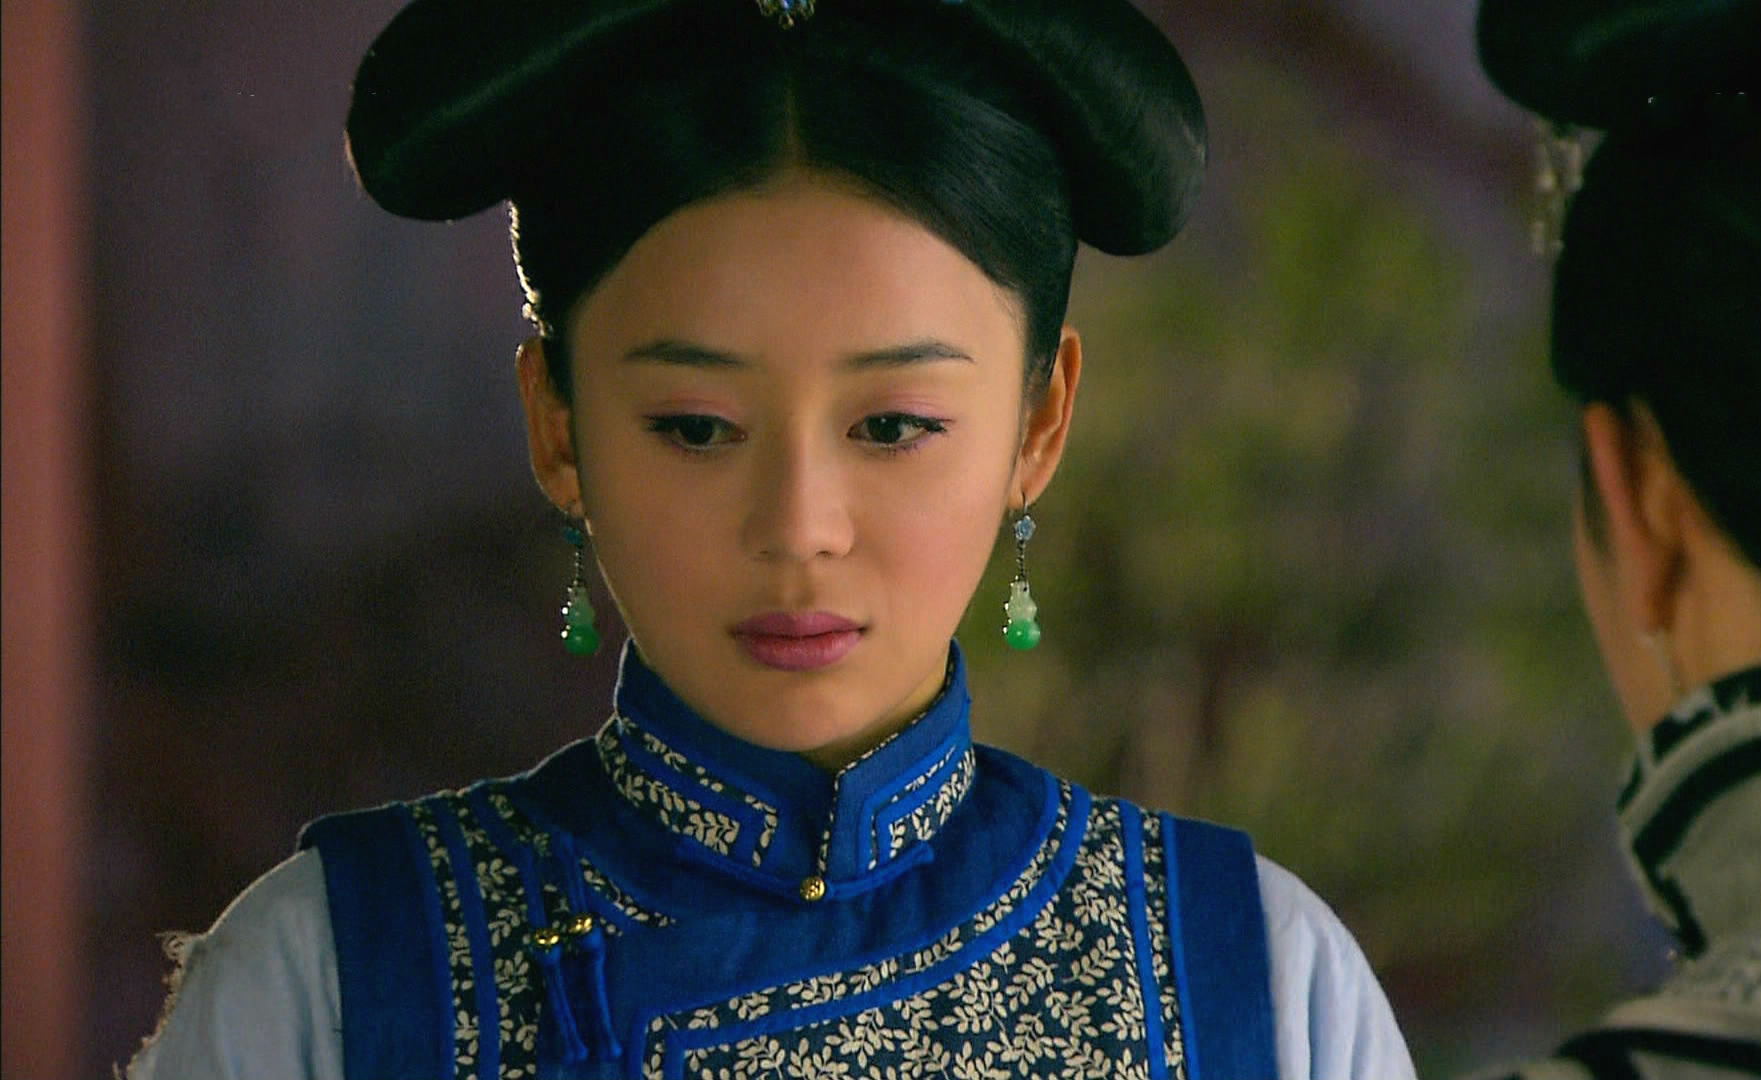 《美人无泪》中袁姗姗扮演玉儿,她是草原上最亮的一颗明珠,也是大家的